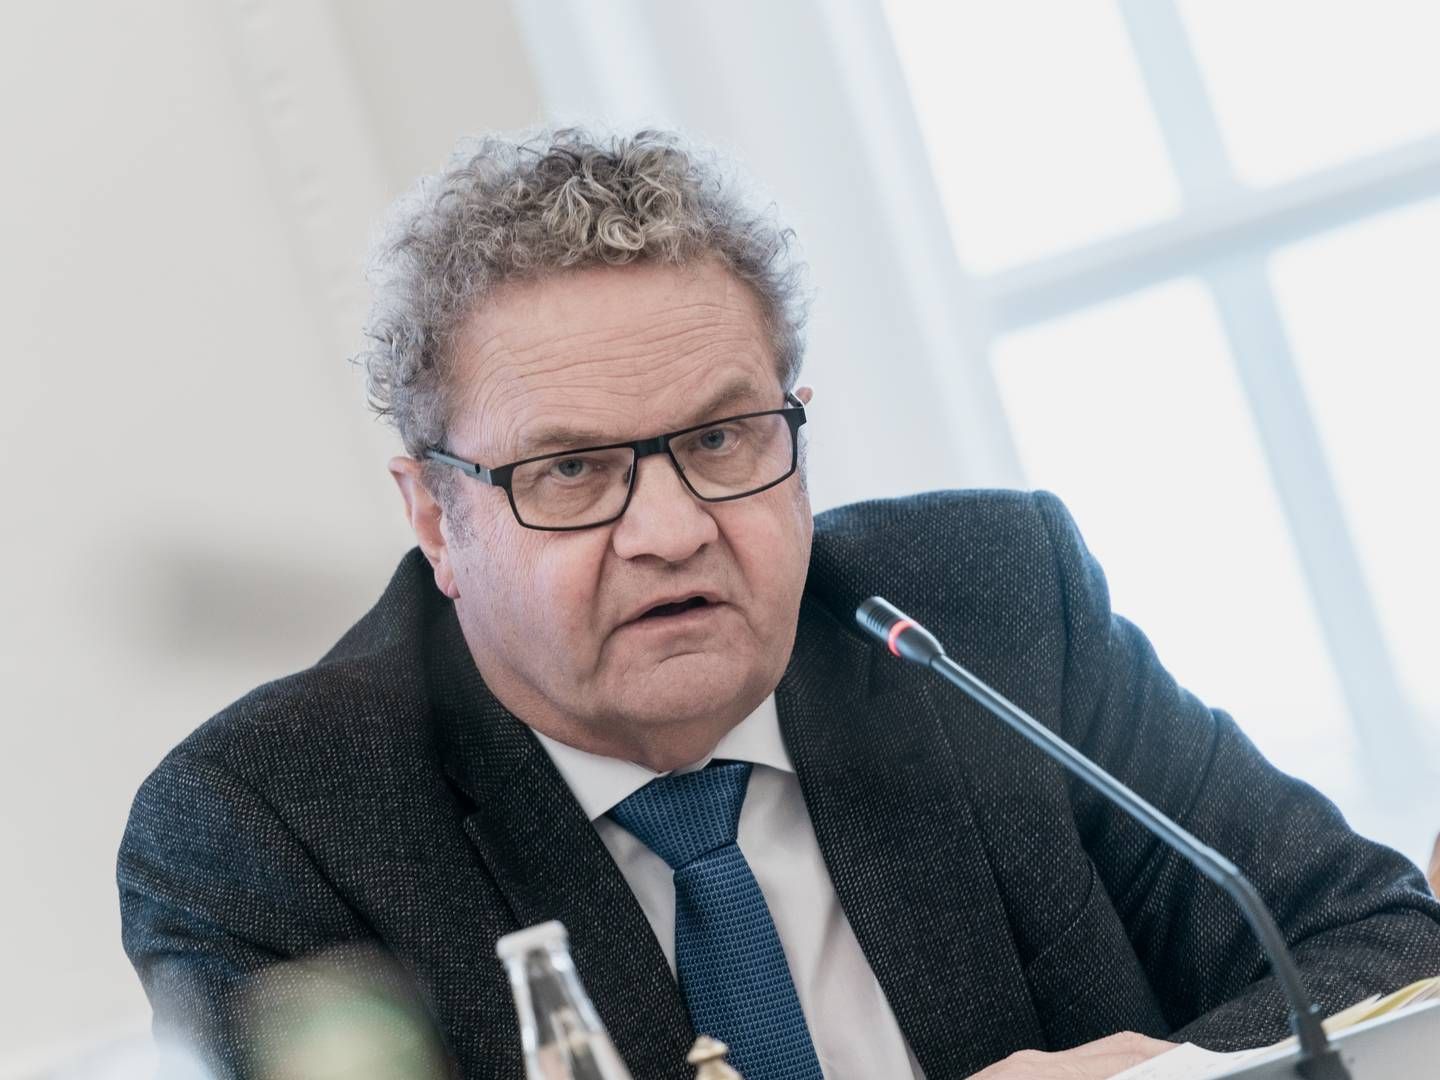 Retsordfører Preben Bang Henriksen (V) vil blandt andet hyre pensionerede dommere. | Foto: Aleksander Klug